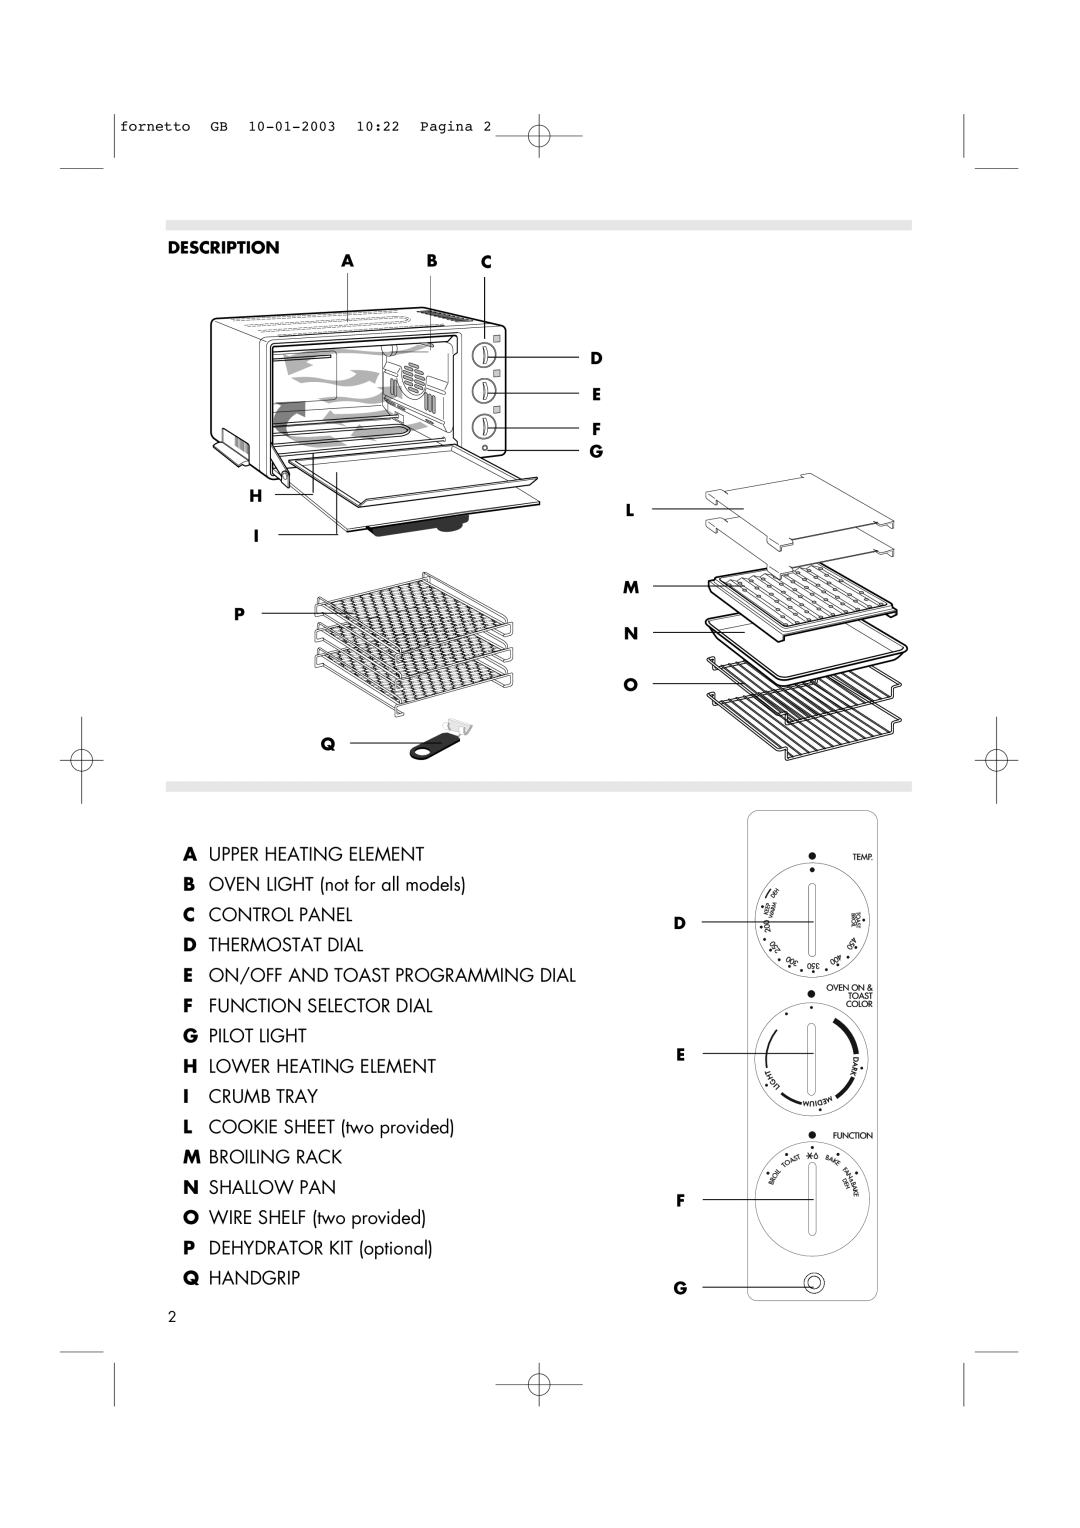 DeLonghi AR690 manual Description H I P, A B C D E F G L M N O Q, Aupper Heating Element, Dthermostat Dial 